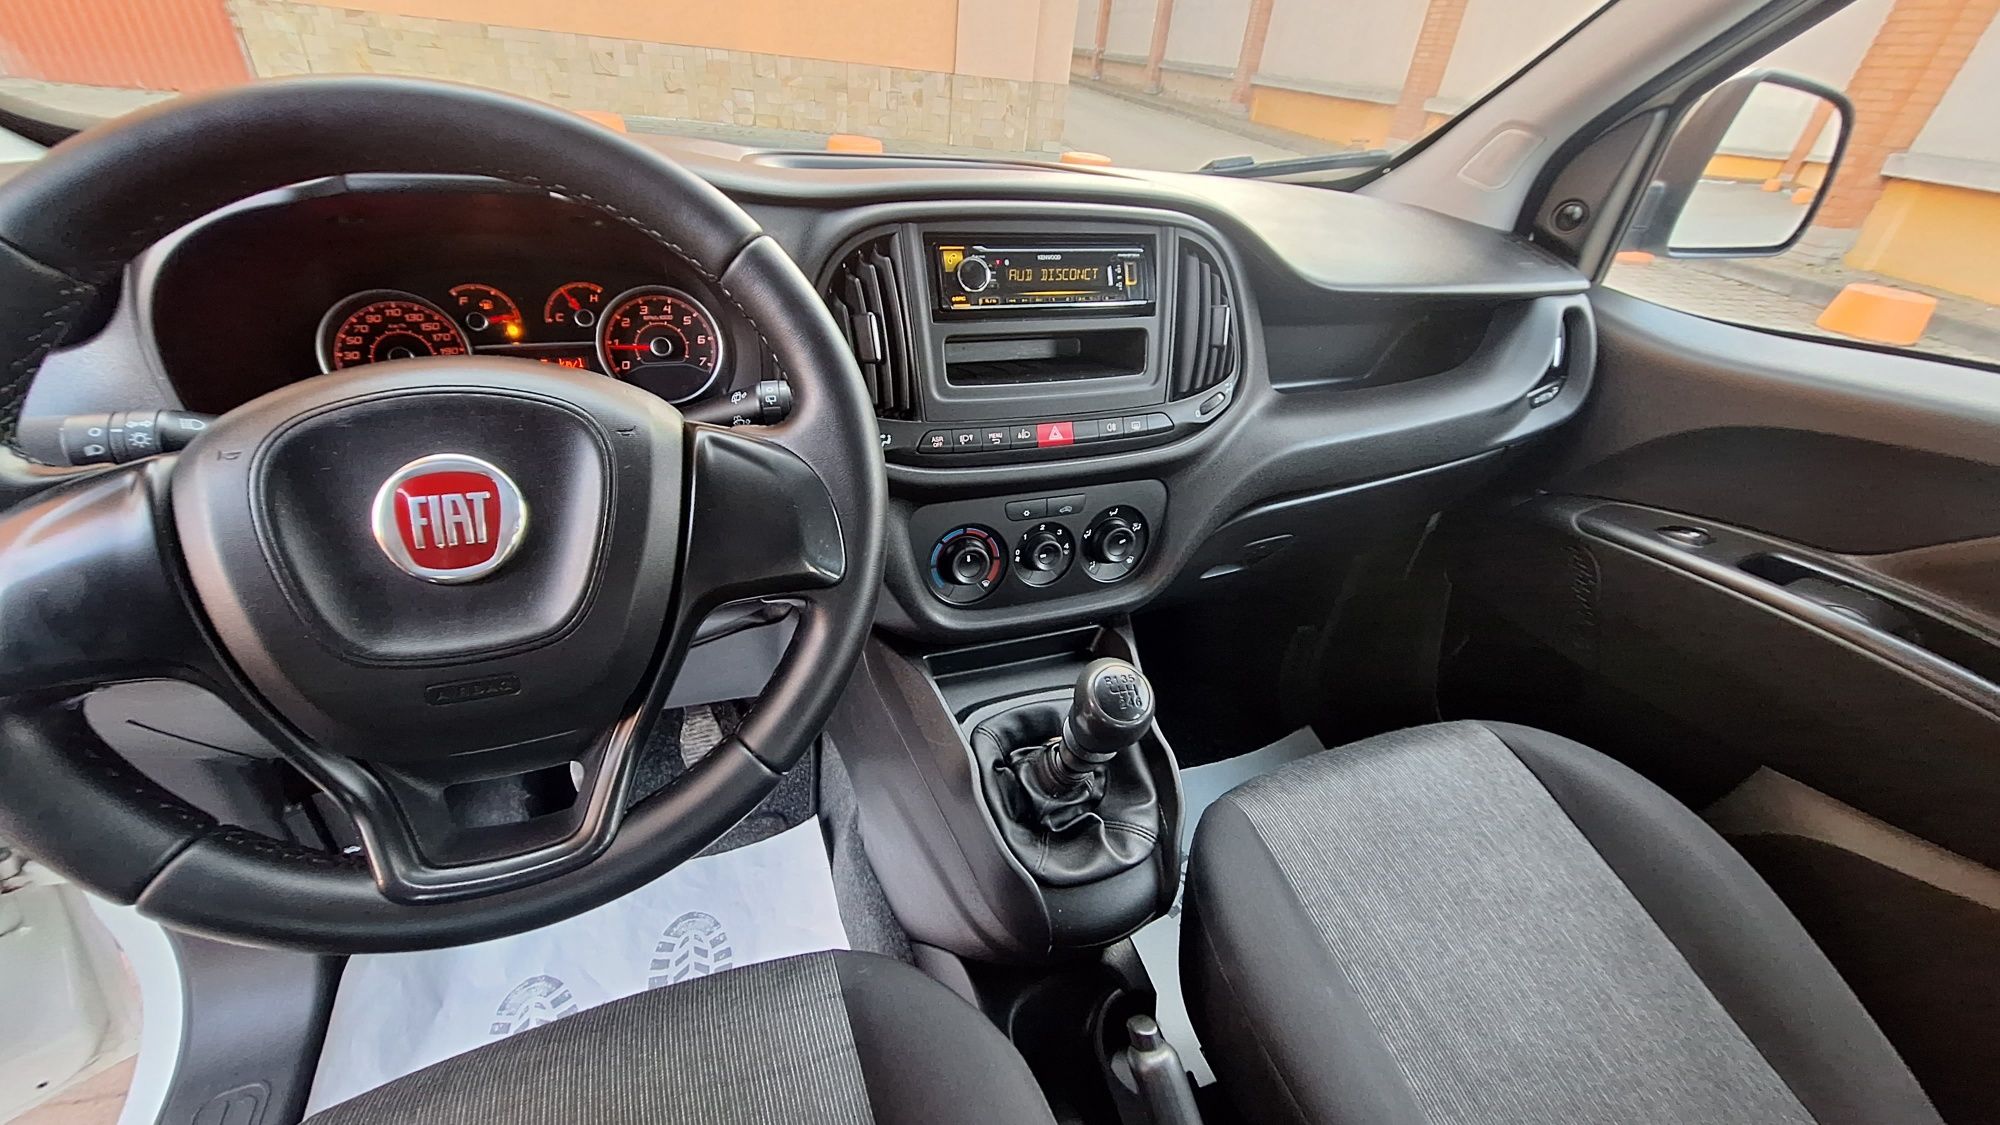 Fiat doblo 2015 1.6 дизель